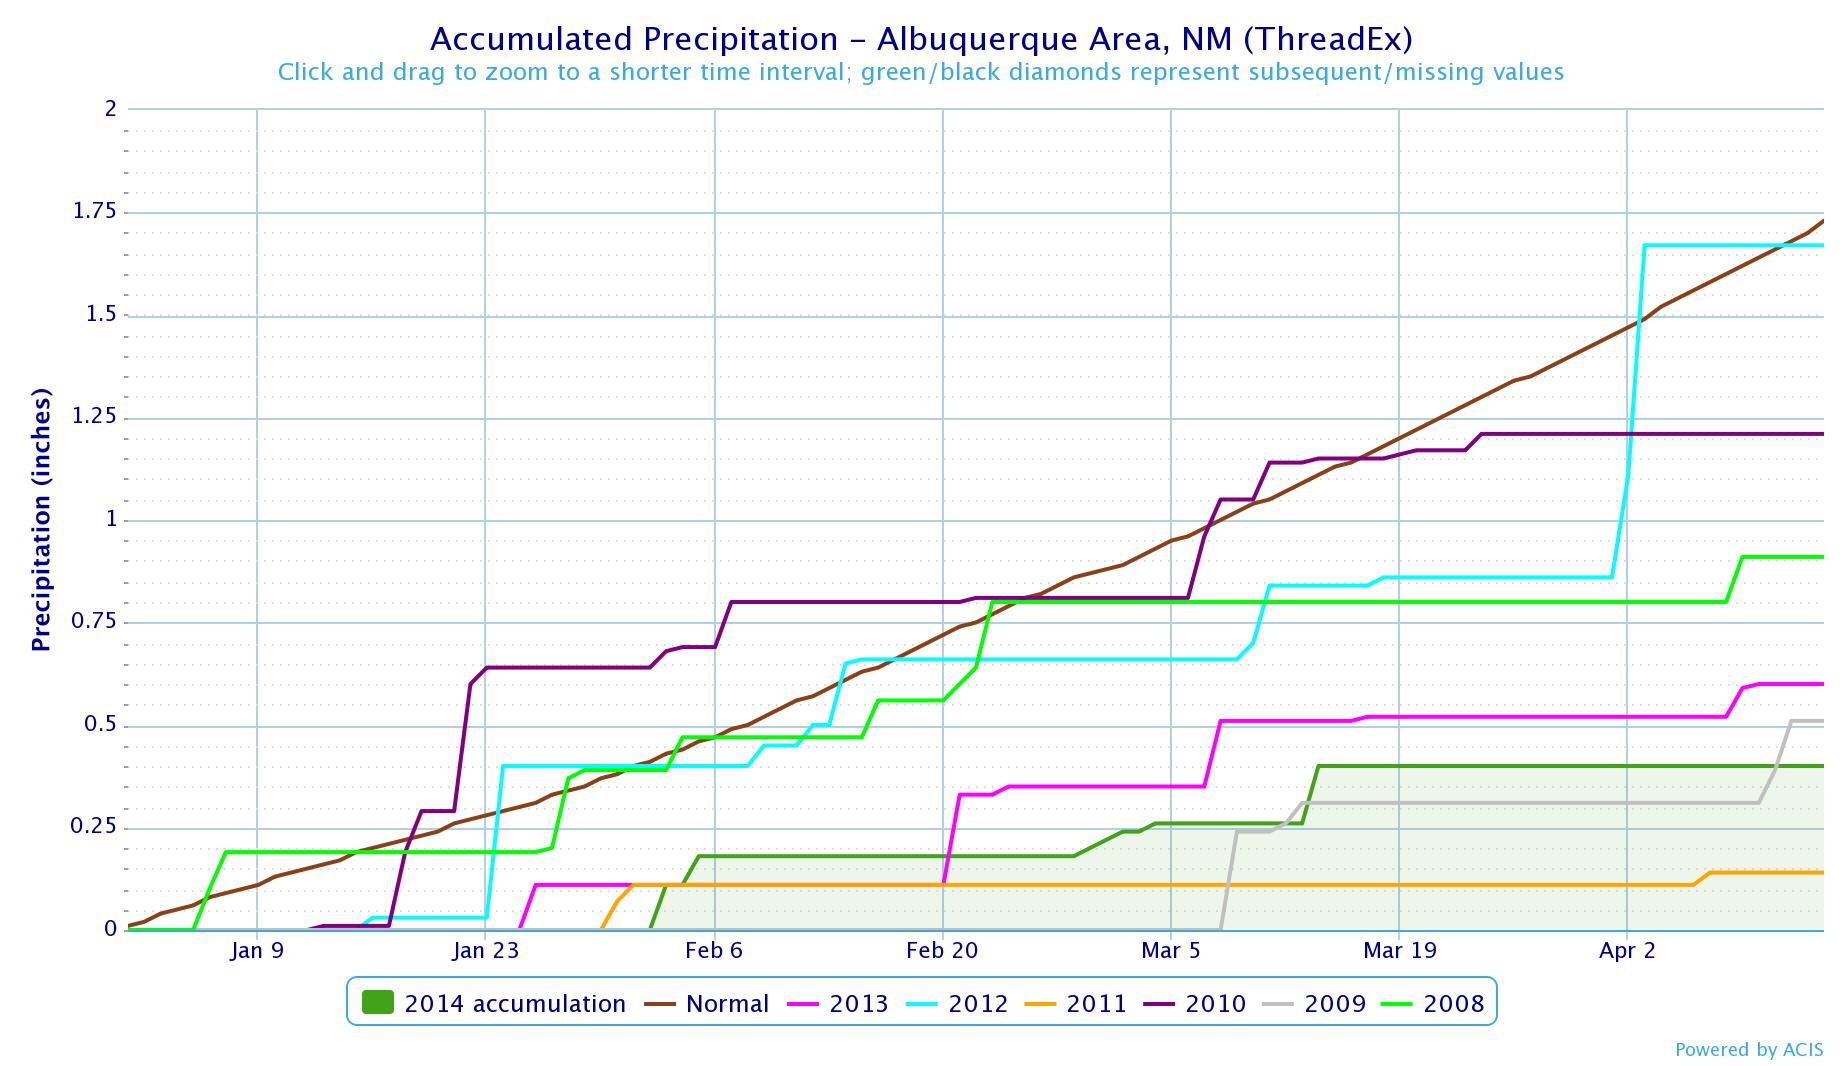 Albuquerque precip through April 14